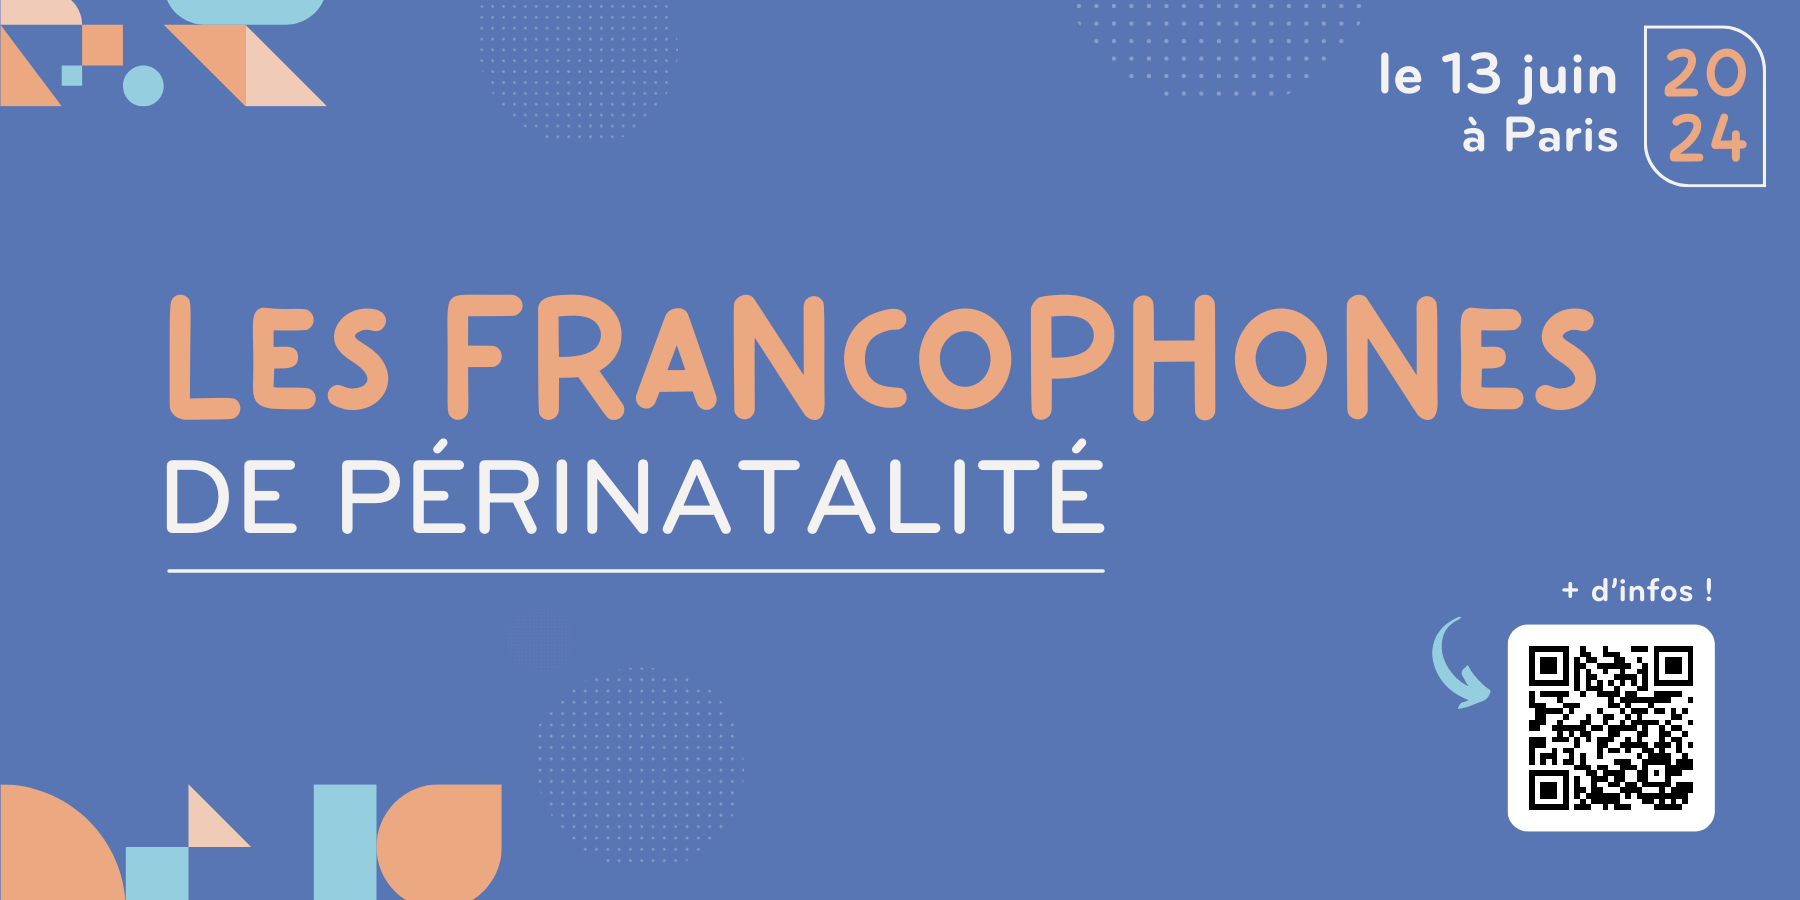 Congrès Les Francophones de Périnatalité